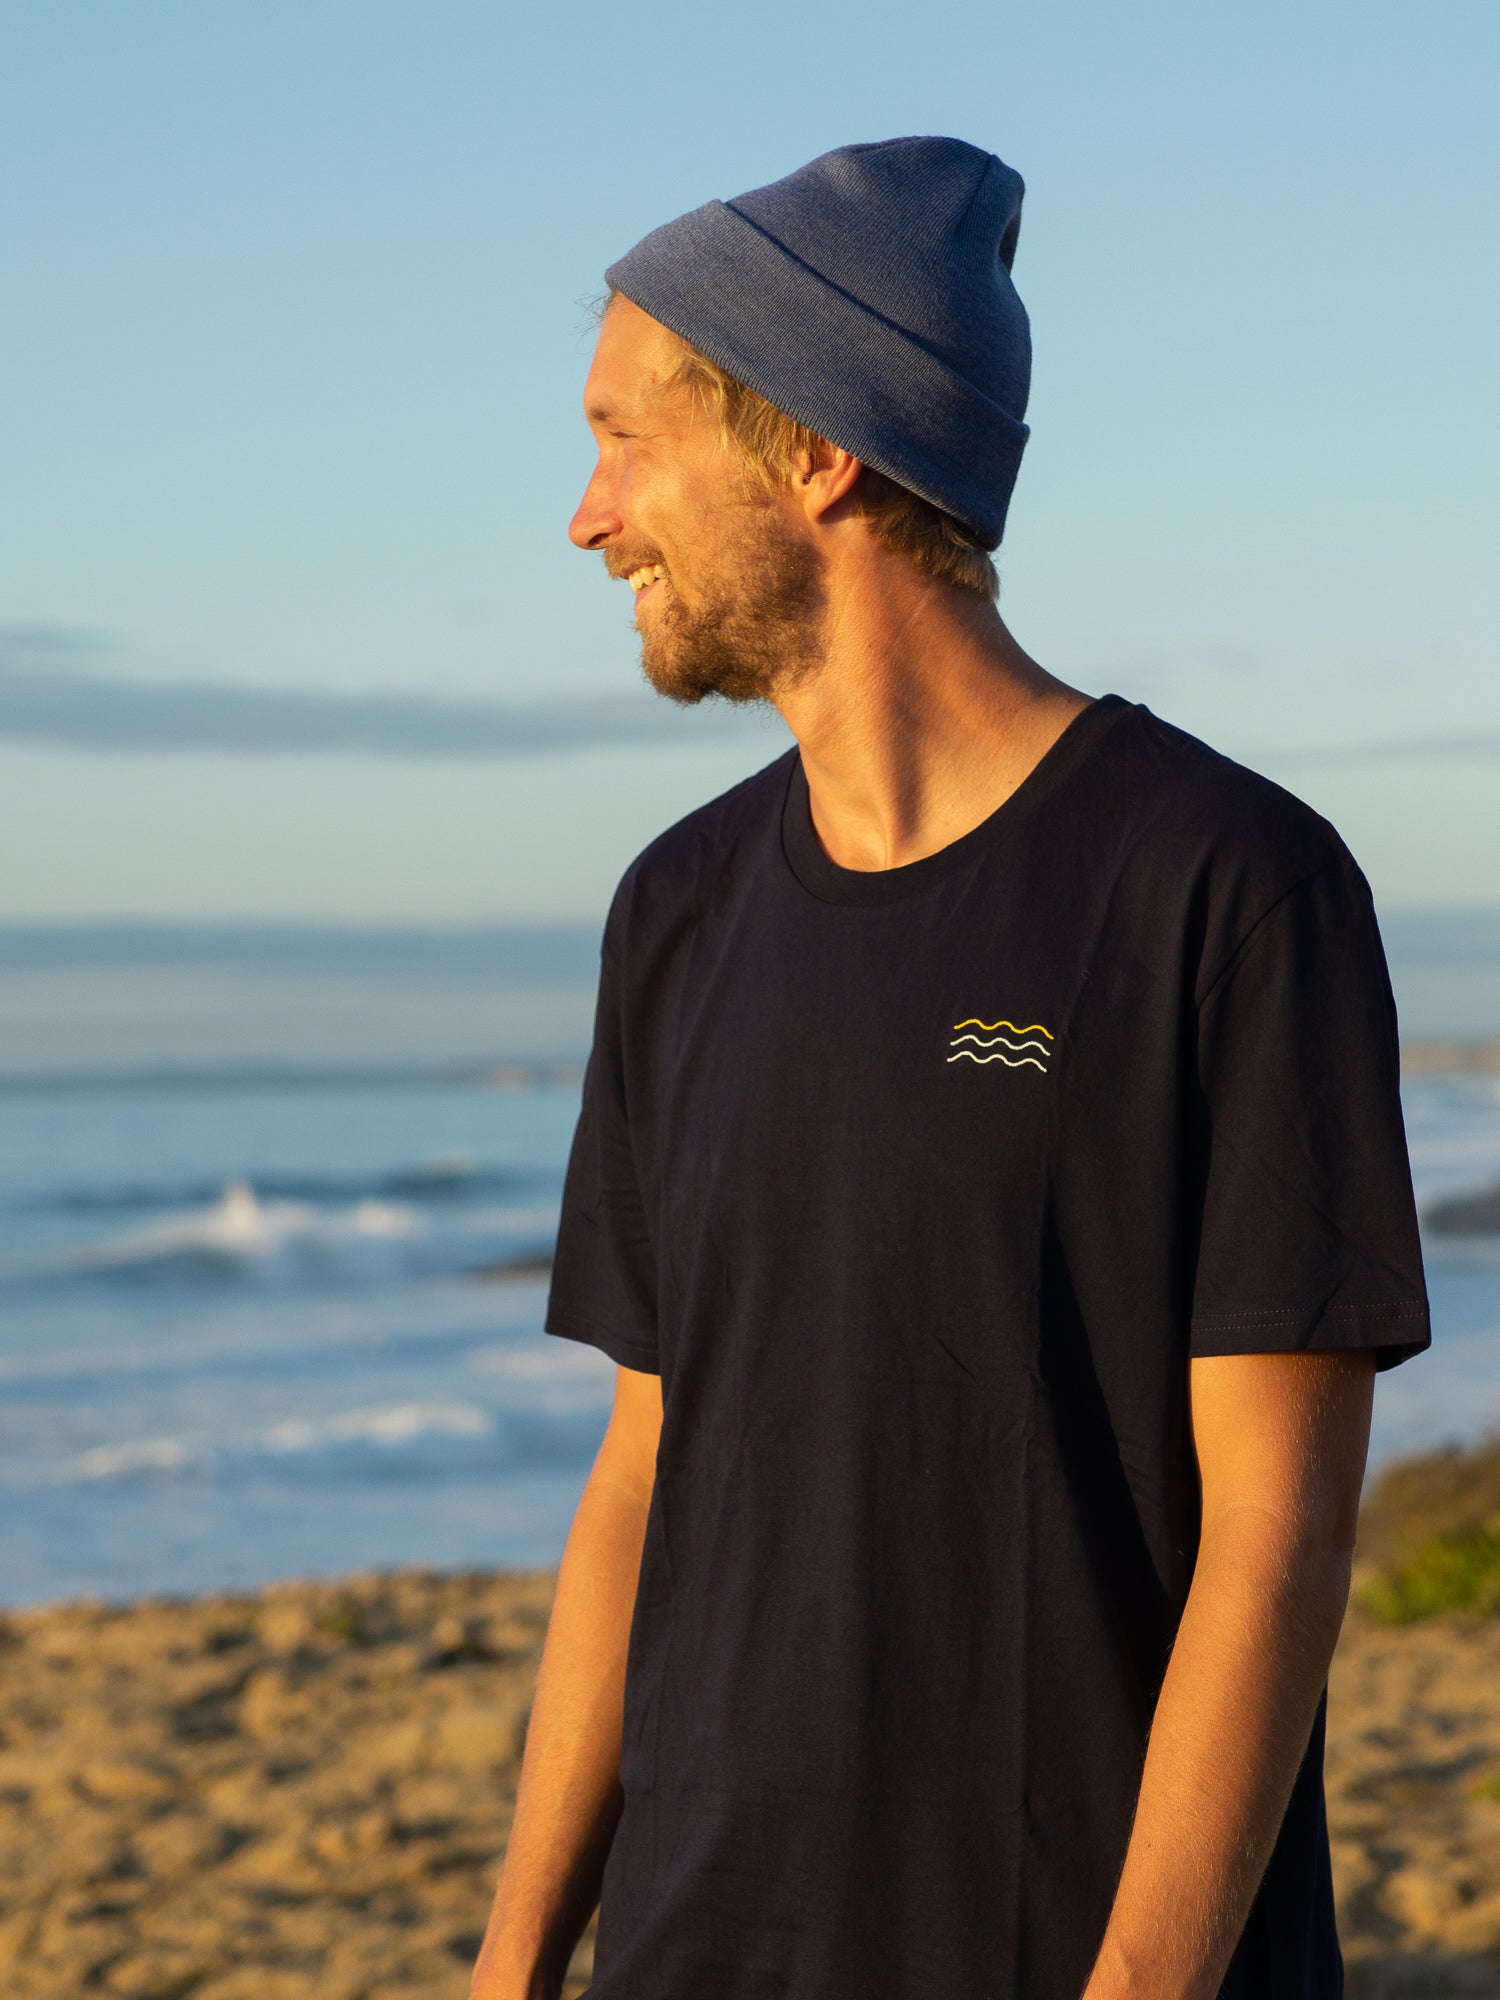 Kenny trägt unser FUXBAU Fair Fashion Surf T-Shirt in navy aus Biobaumwolle am Meer